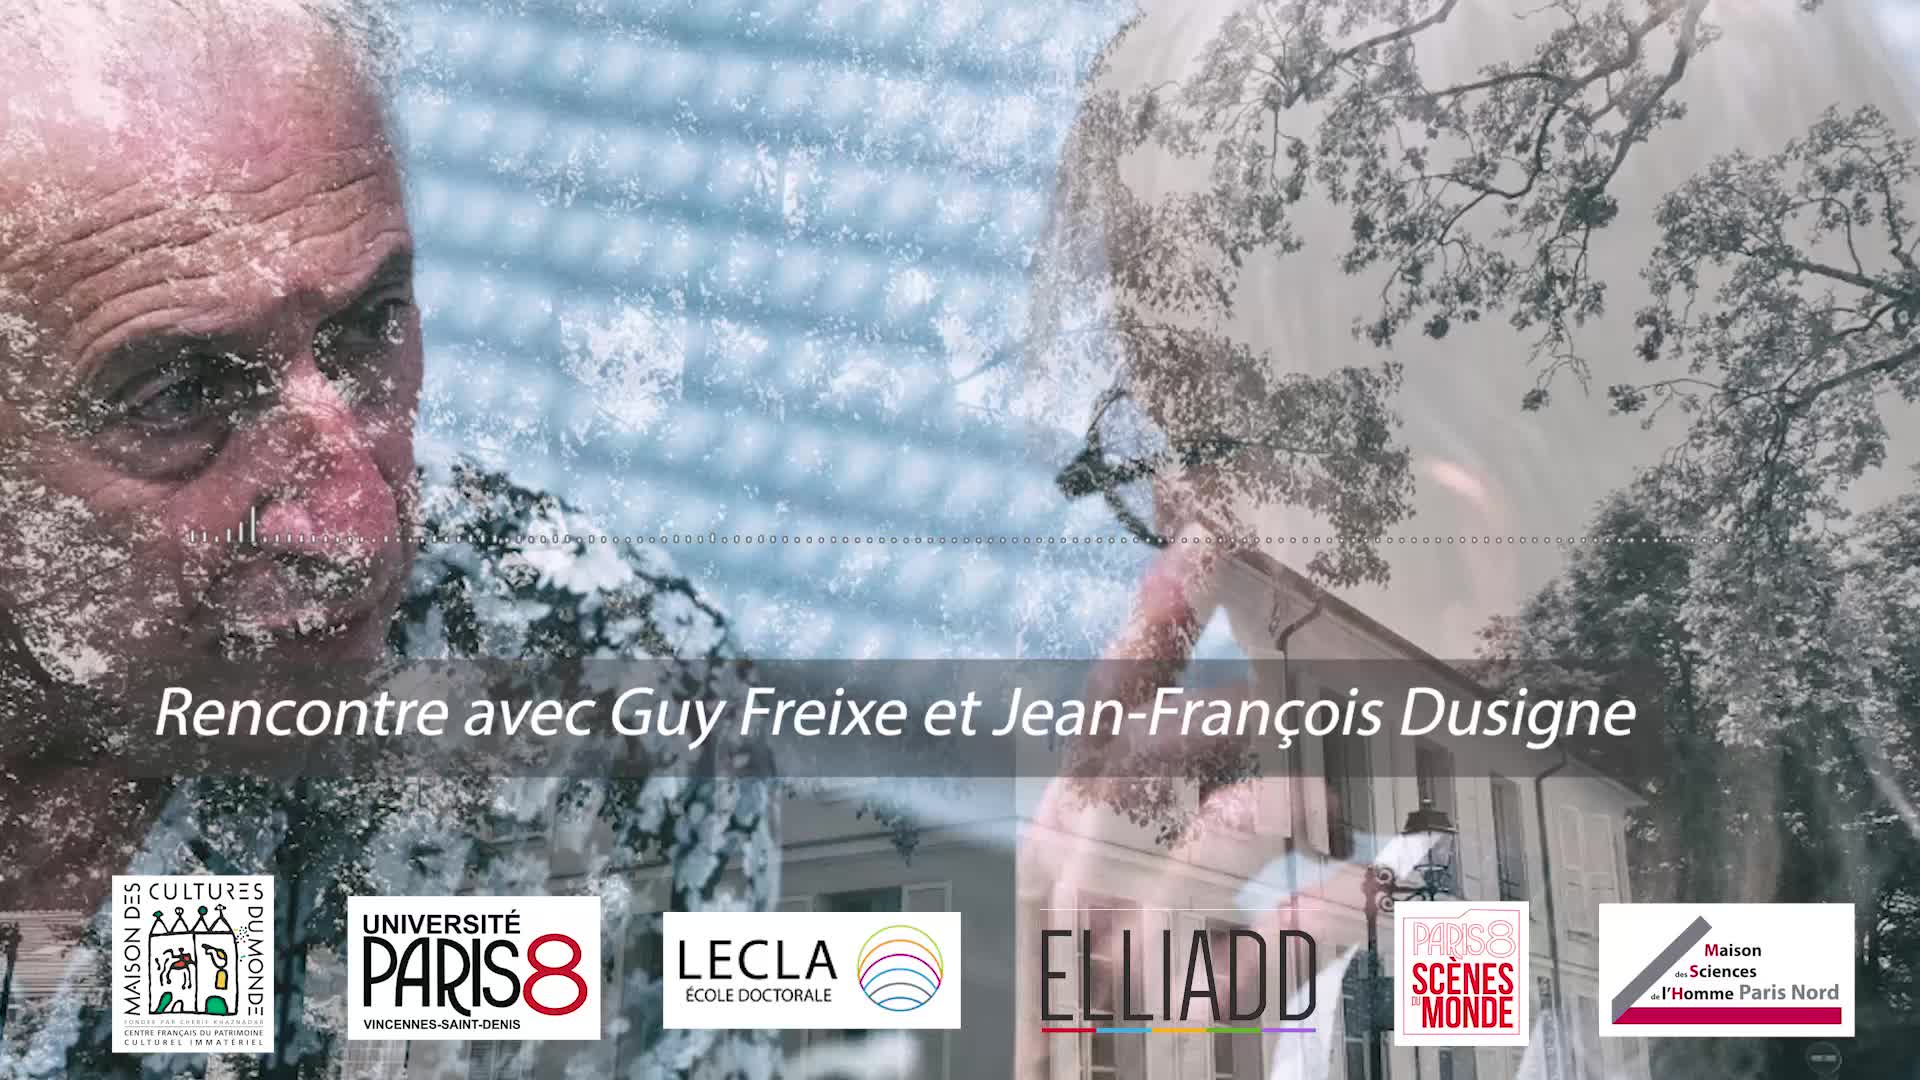 Rencontre avec Guy Freixe et Jean-François Dusigne